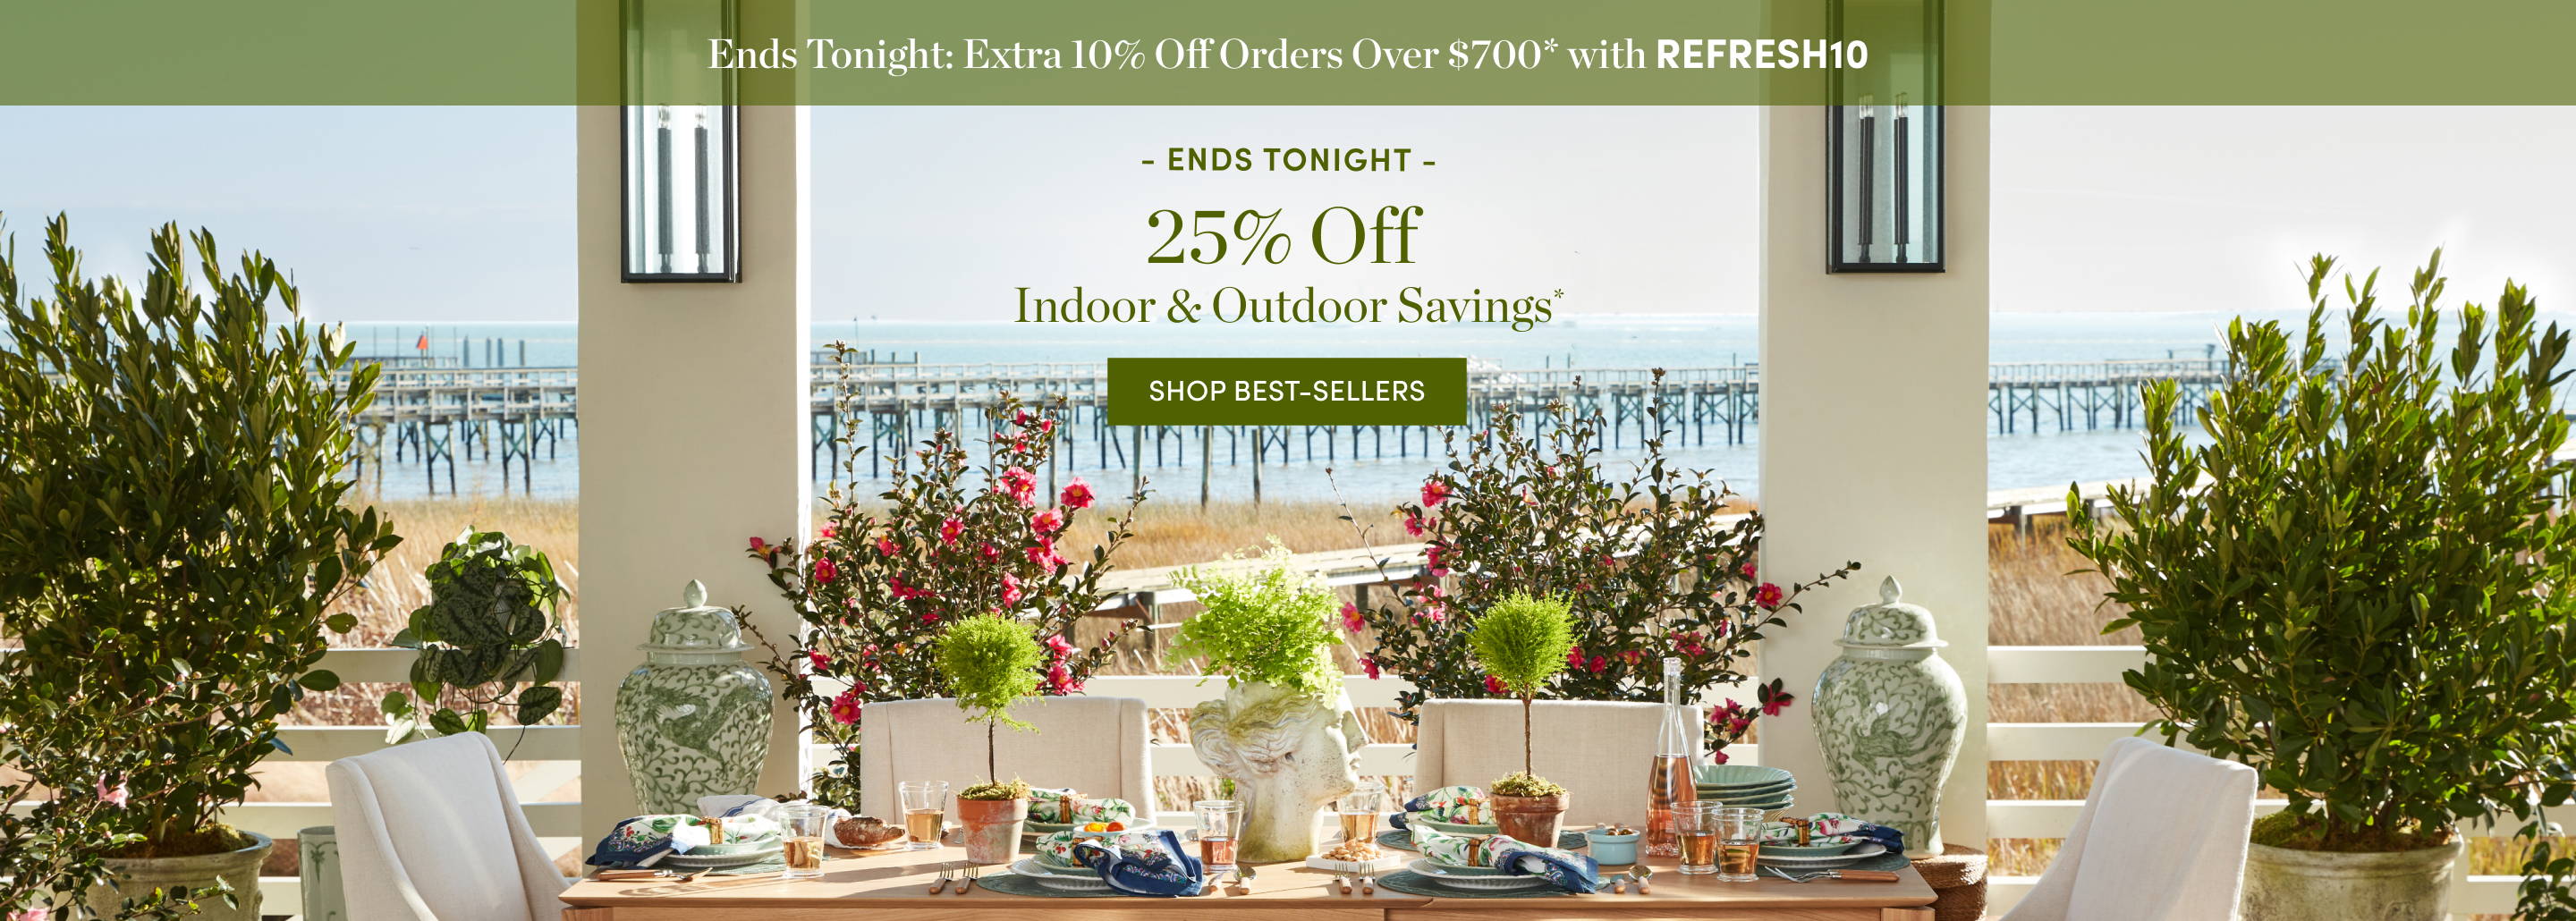 25% Off Indoor & Outdoor Savings